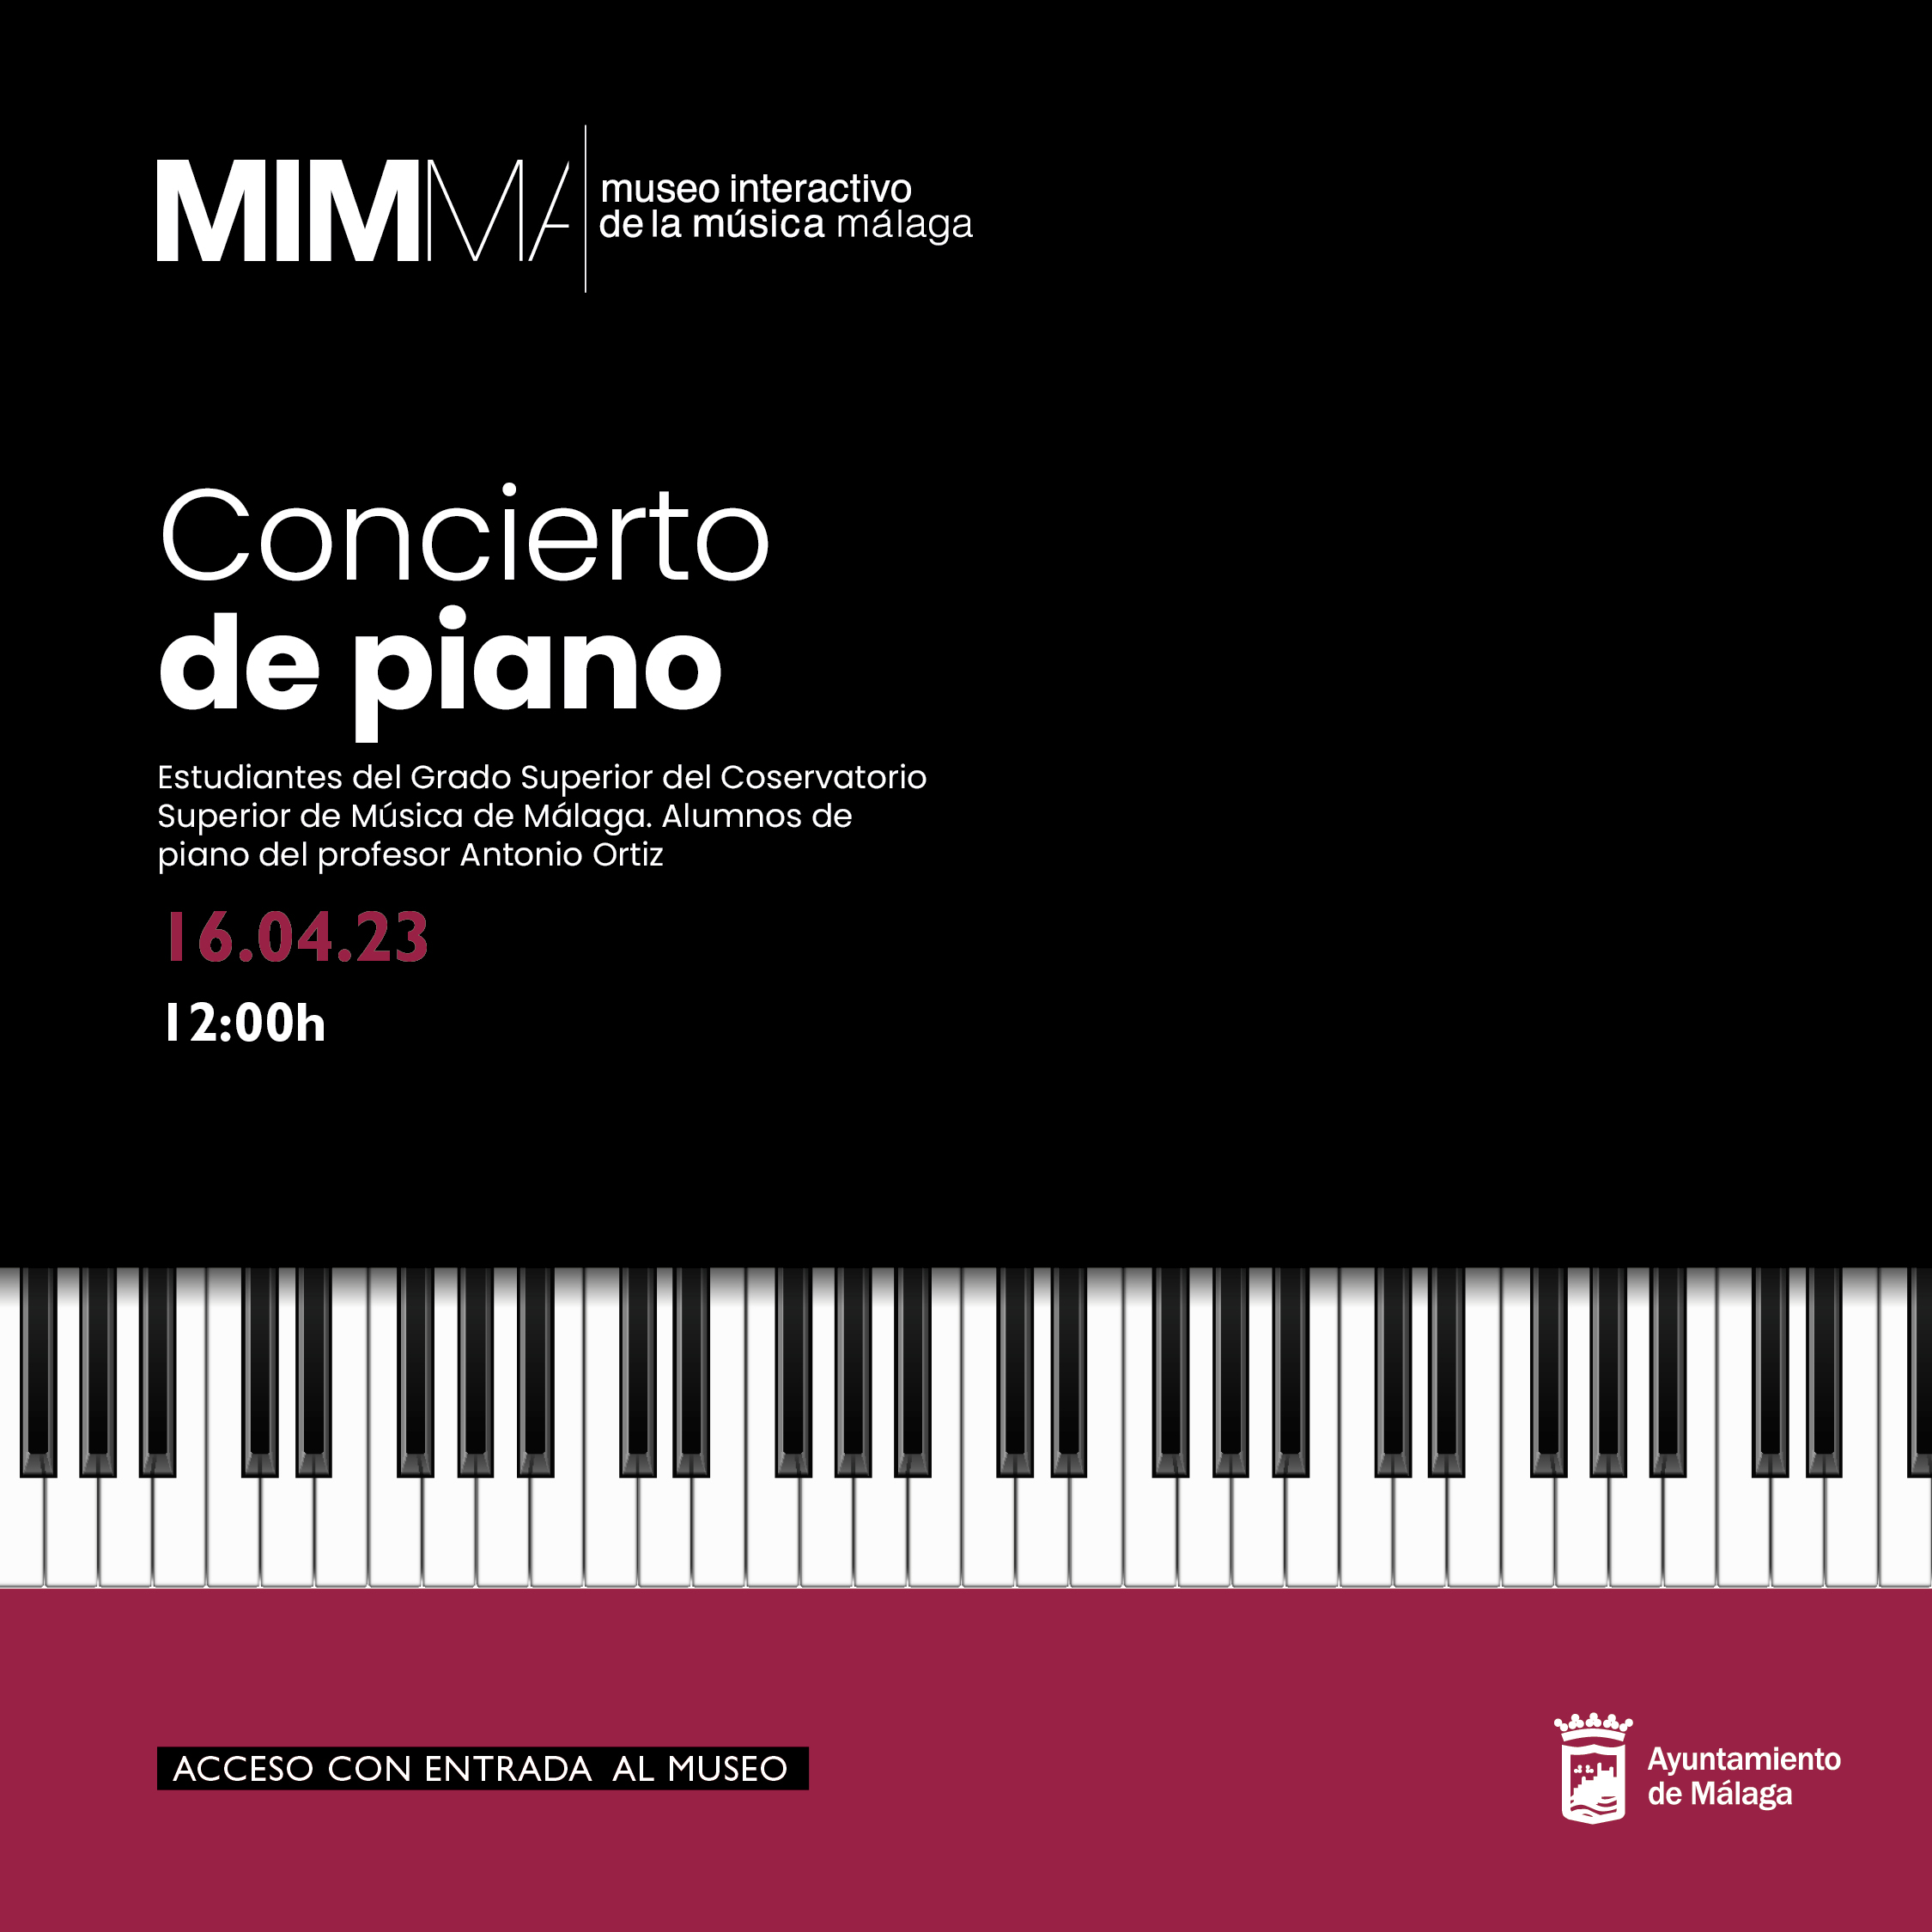 RECITAL DE PIANO DE LOS ALUMNOS DEL CONSERVATORIO SUPERIOR DE MÚSICA DE MÁLAGA EN EL MIMMA (Abre en ventana nueva)